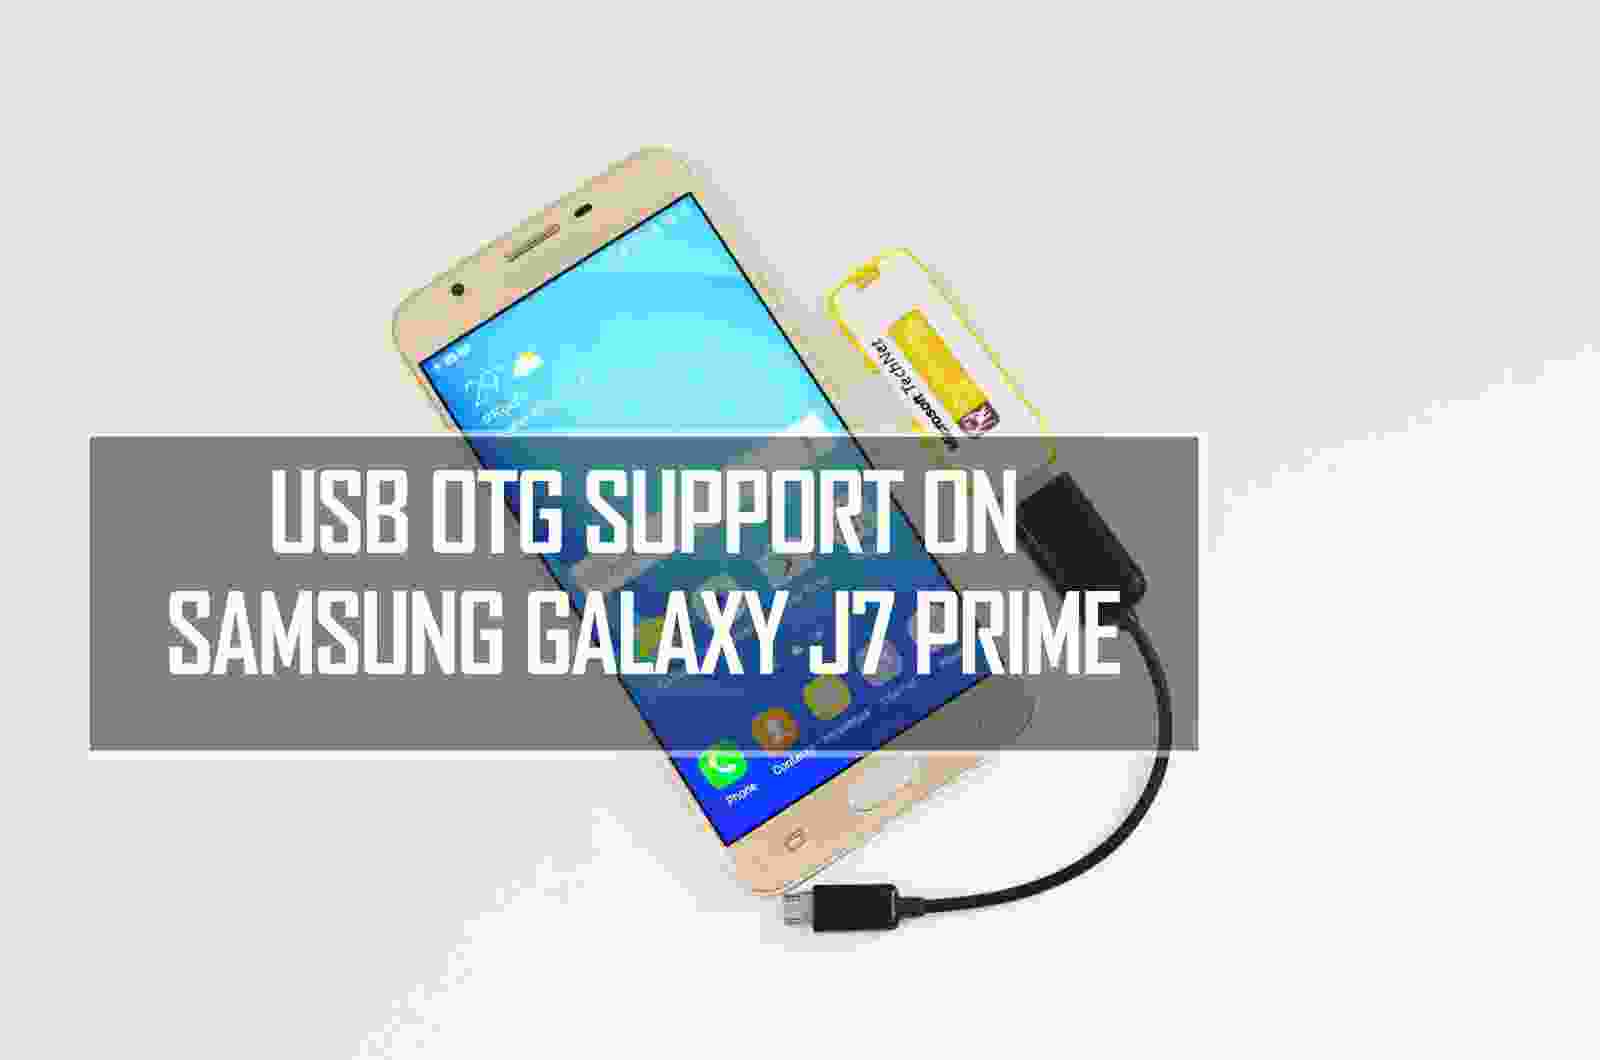 Thủ thuật Samsung Galaxy J7 Prime sẽ giúp bạn tận dụng tối đa khả năng của thiết bị này. Từ tính năng bảo mật đến tối ưu hóa pin, các thủ thuật này sẽ mang đến cho bạn một trải nghiệm tối ưu hơn. Hãy xem ảnh để khám phá những thủ thuật hữu ích dành cho Galaxy J7 Prime.